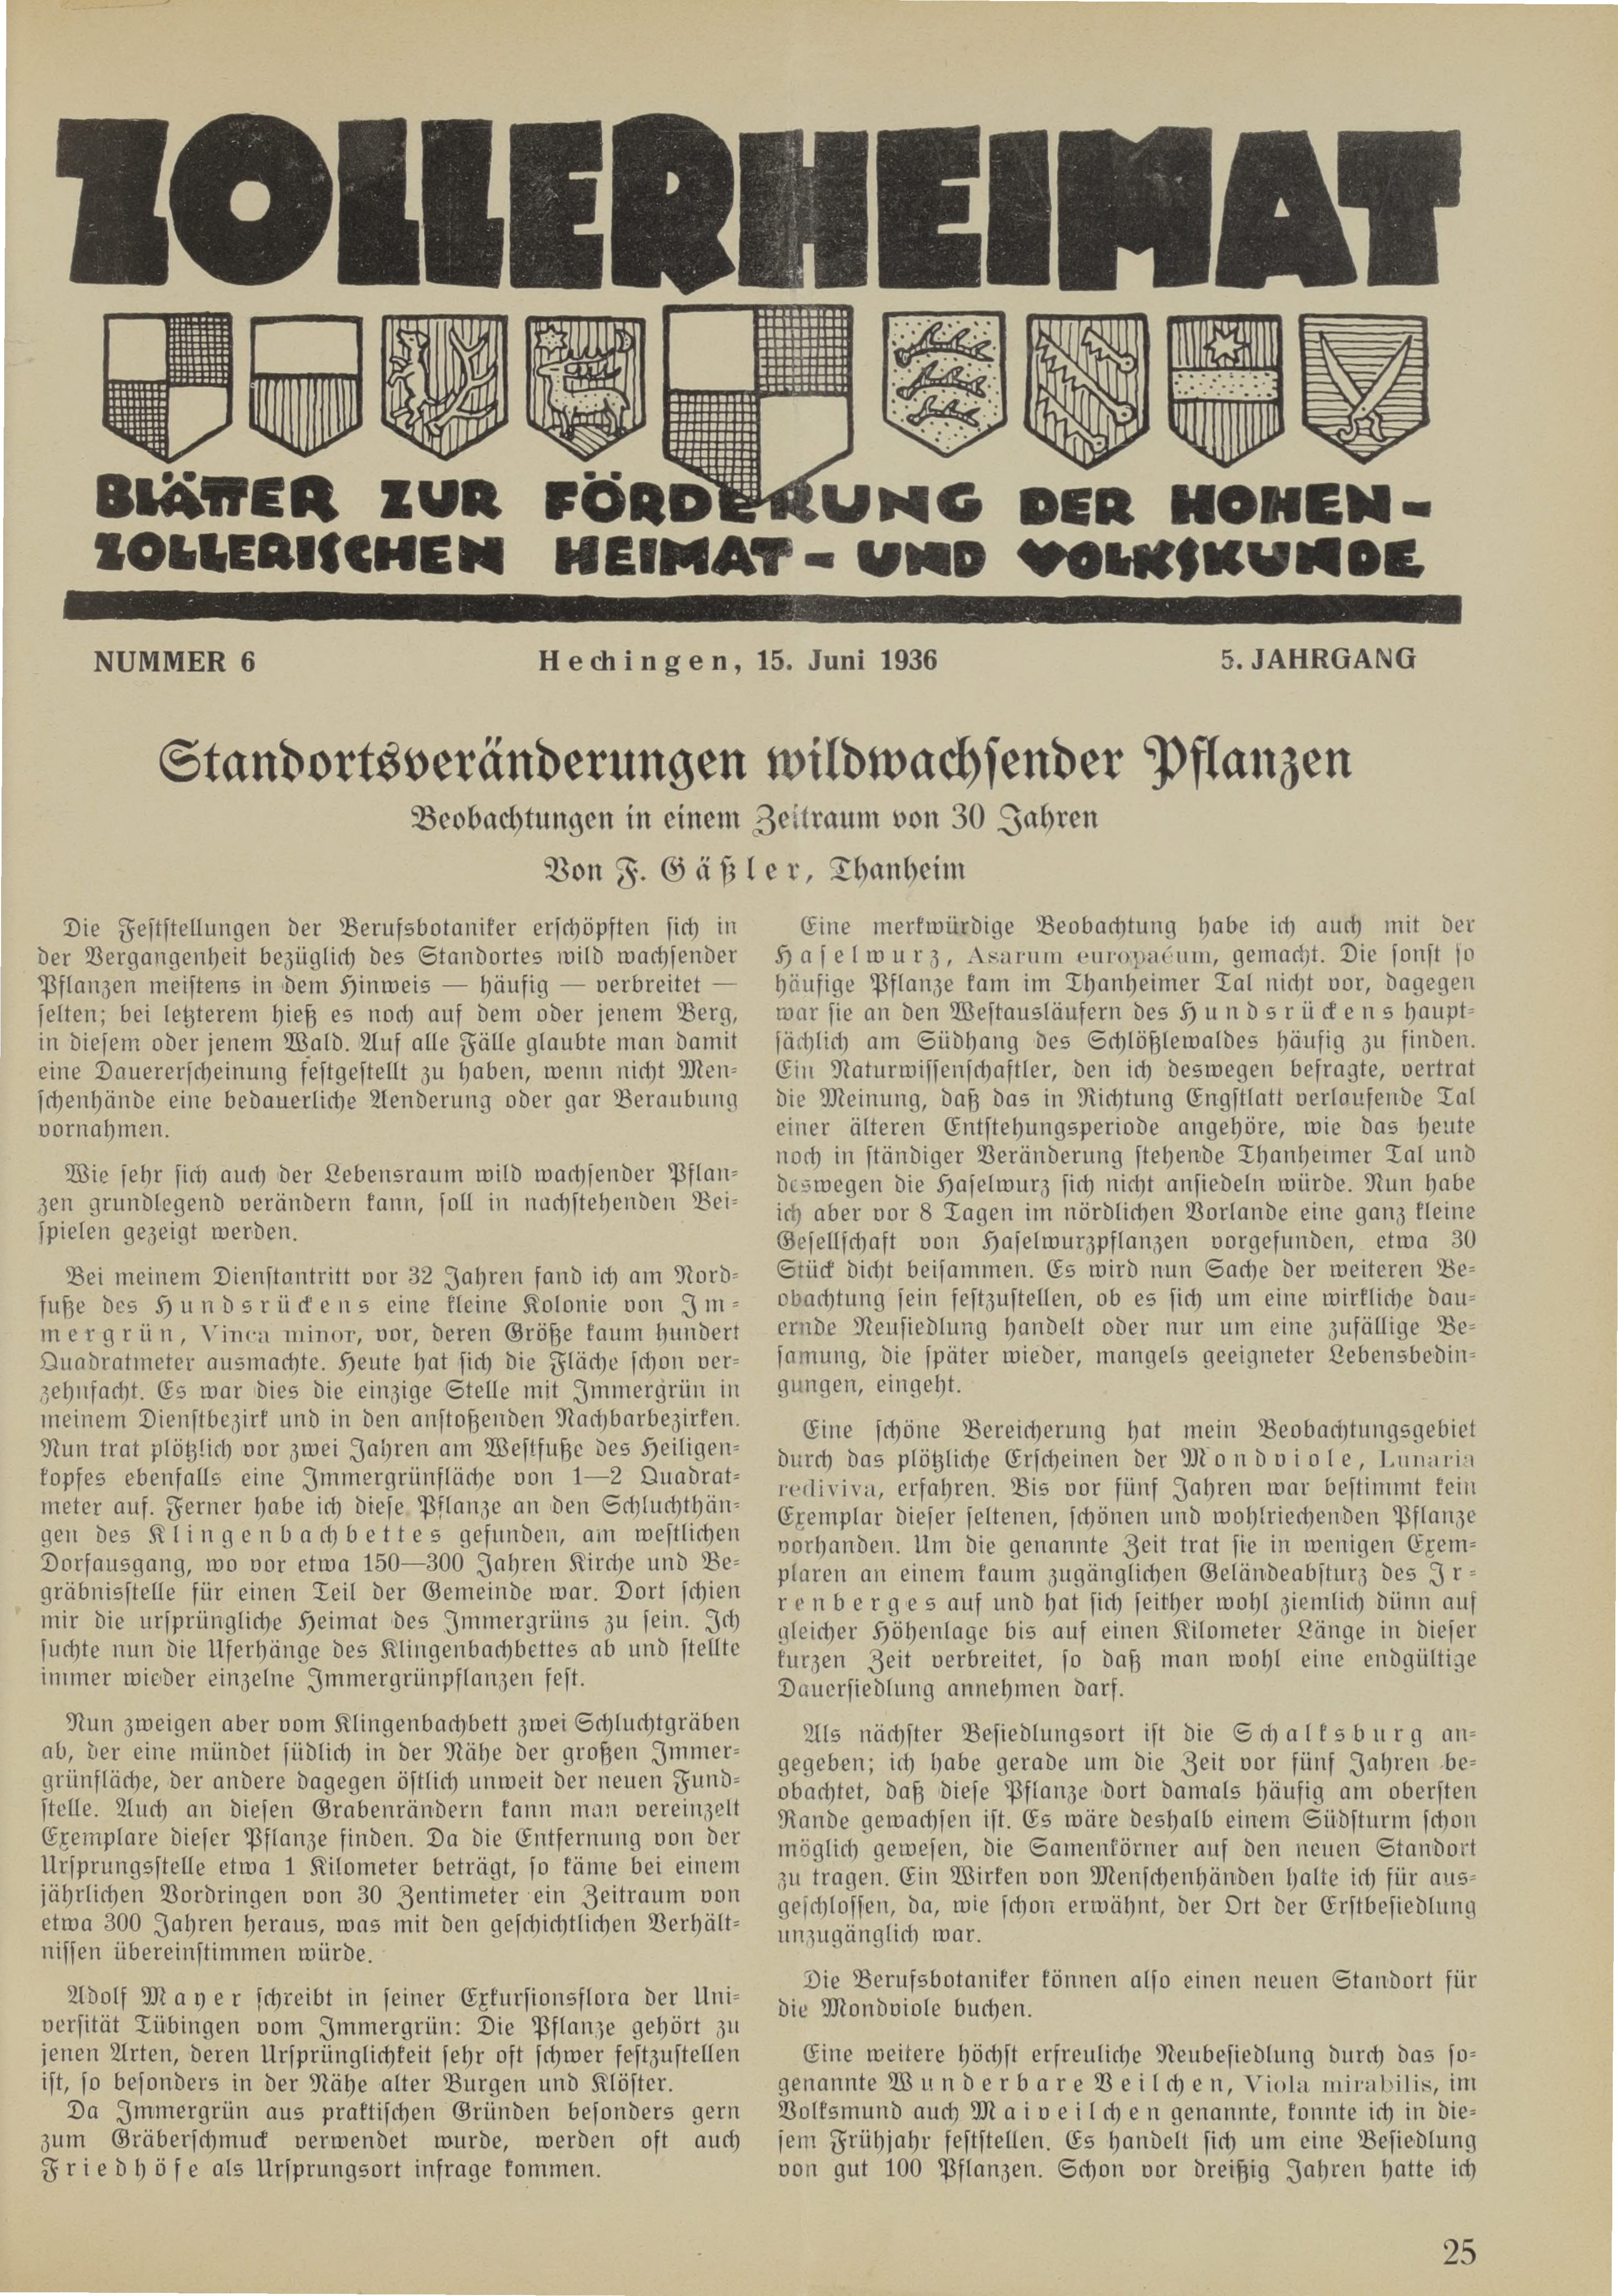                     Ansehen Bd. 5 Nr. 6 (1936): Zollerheimat
                